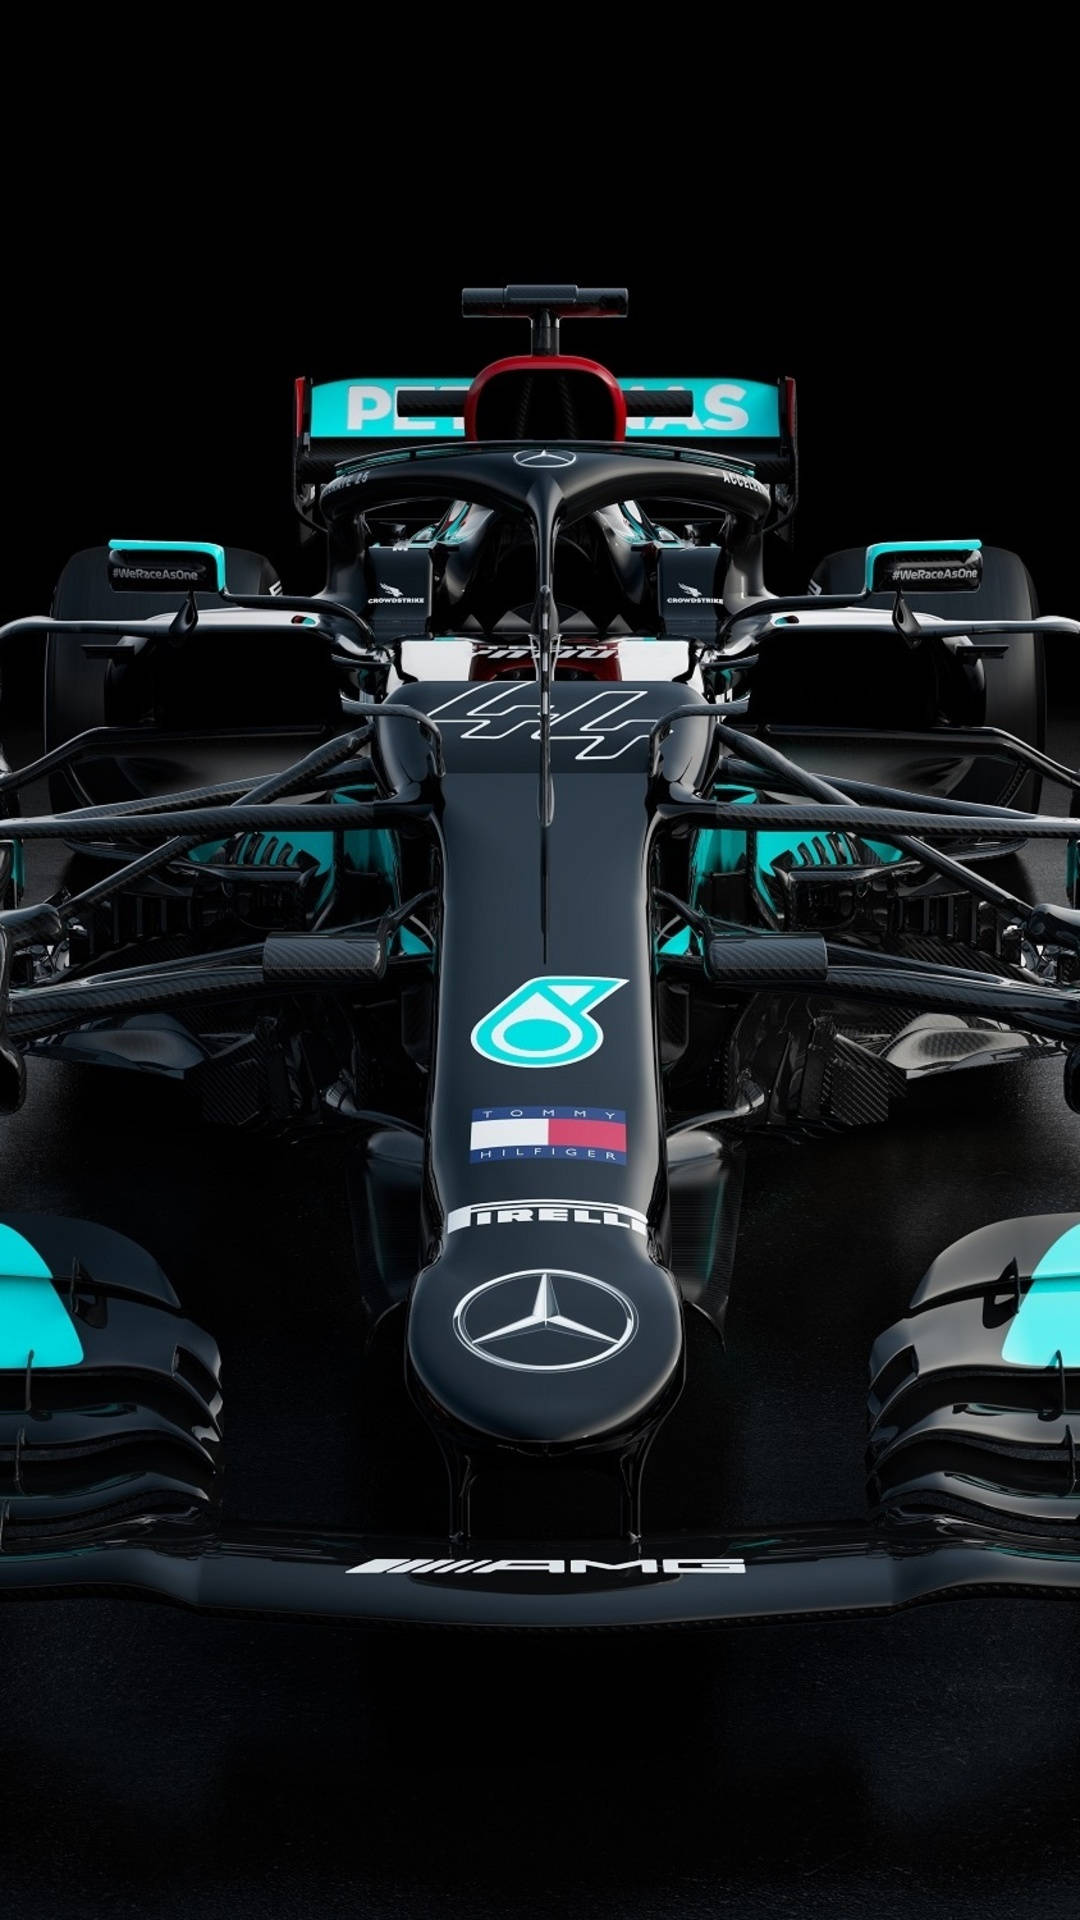 Aceleraen La Vía Rápida Con El Fondo De Pantalla Del Mercedes F1 Para Iphone. Fondo de pantalla